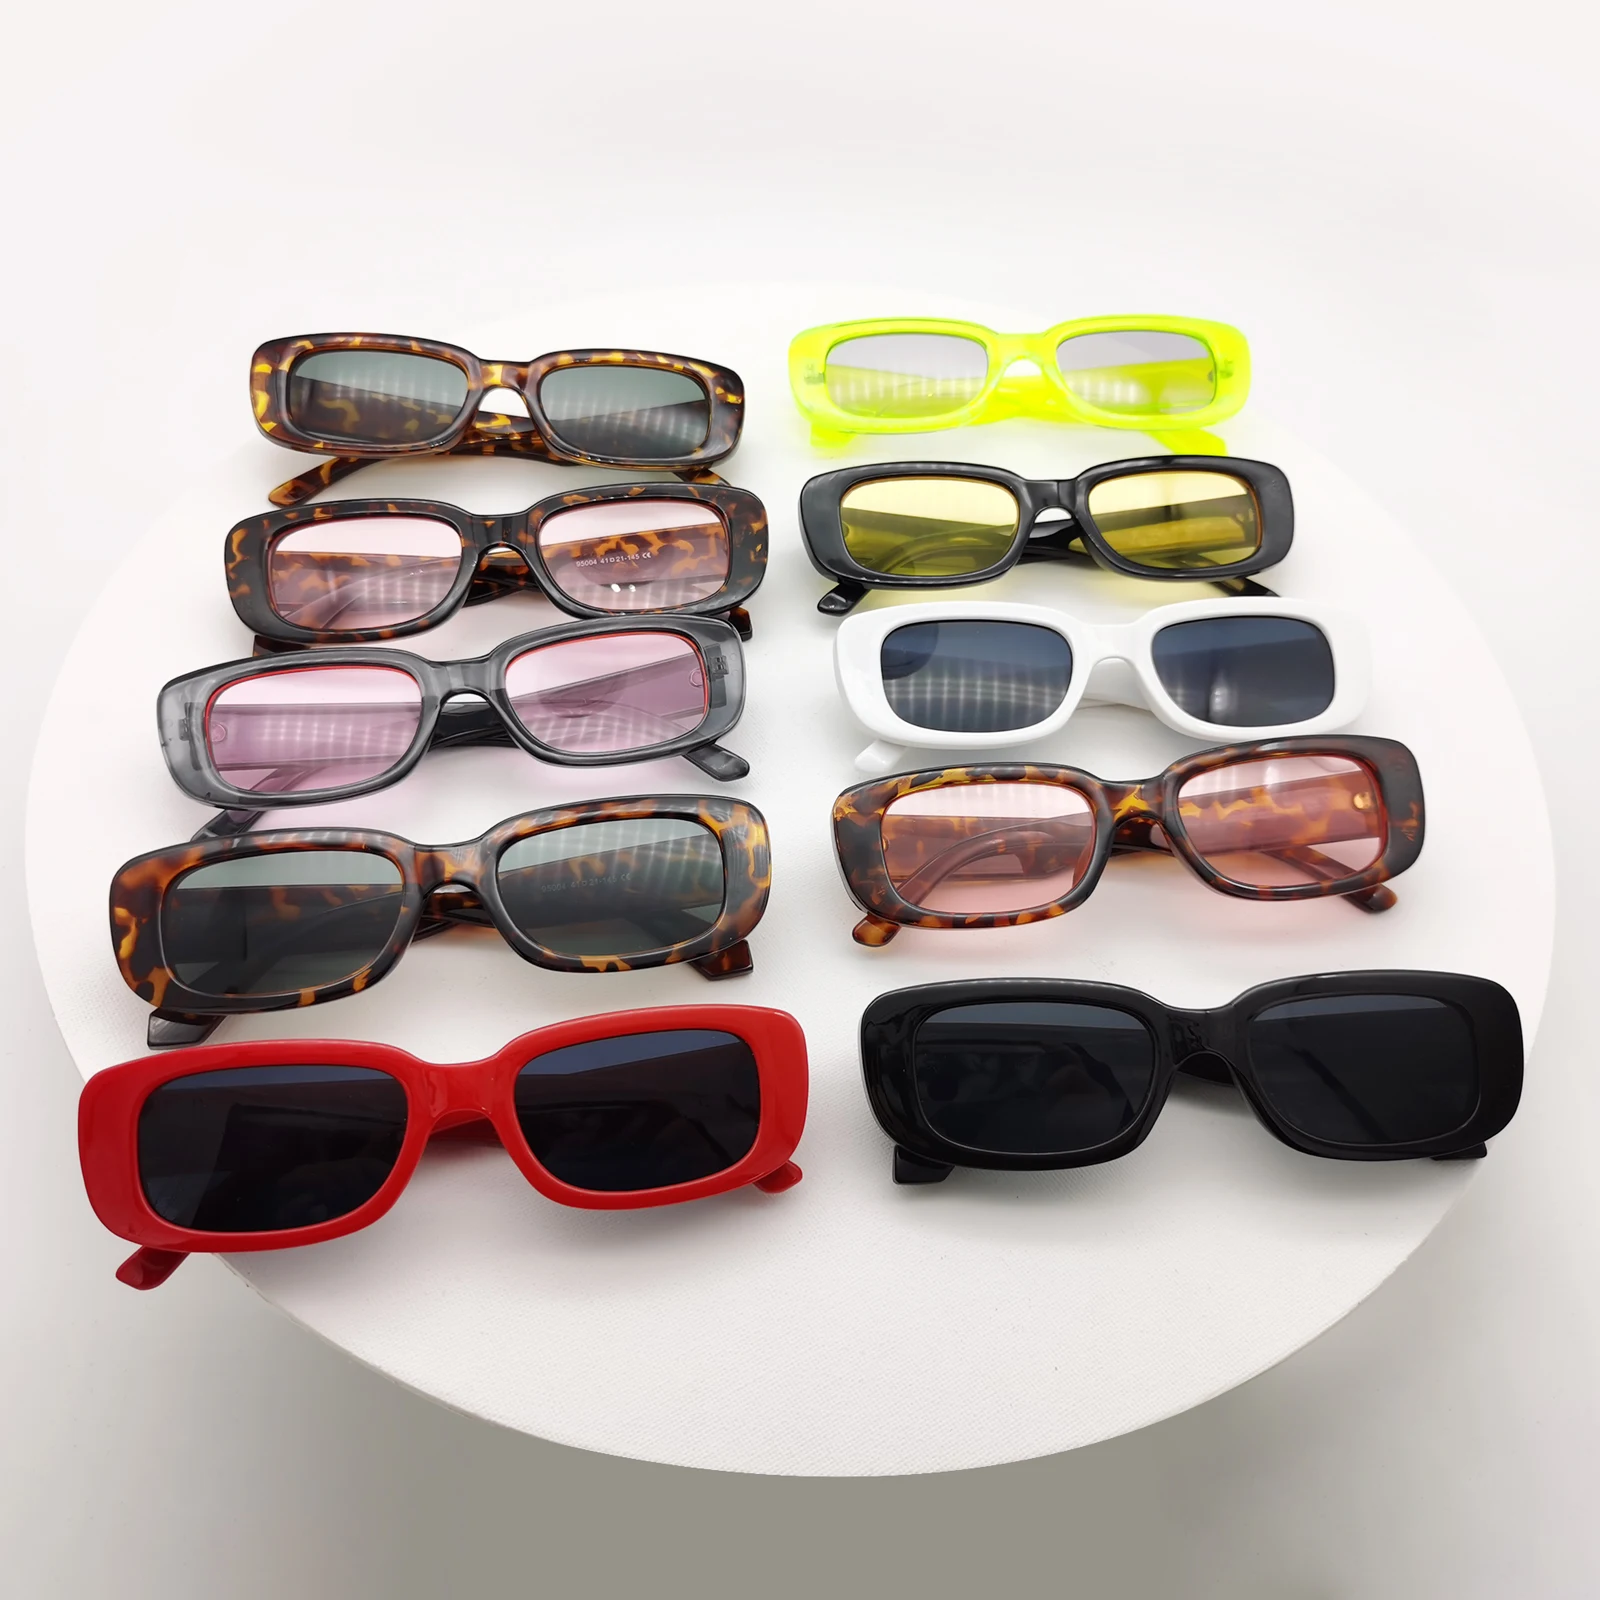 

2021 Vintage Retro Small Square Rectangle Rimless Sunglasses Sun Glasses Shades